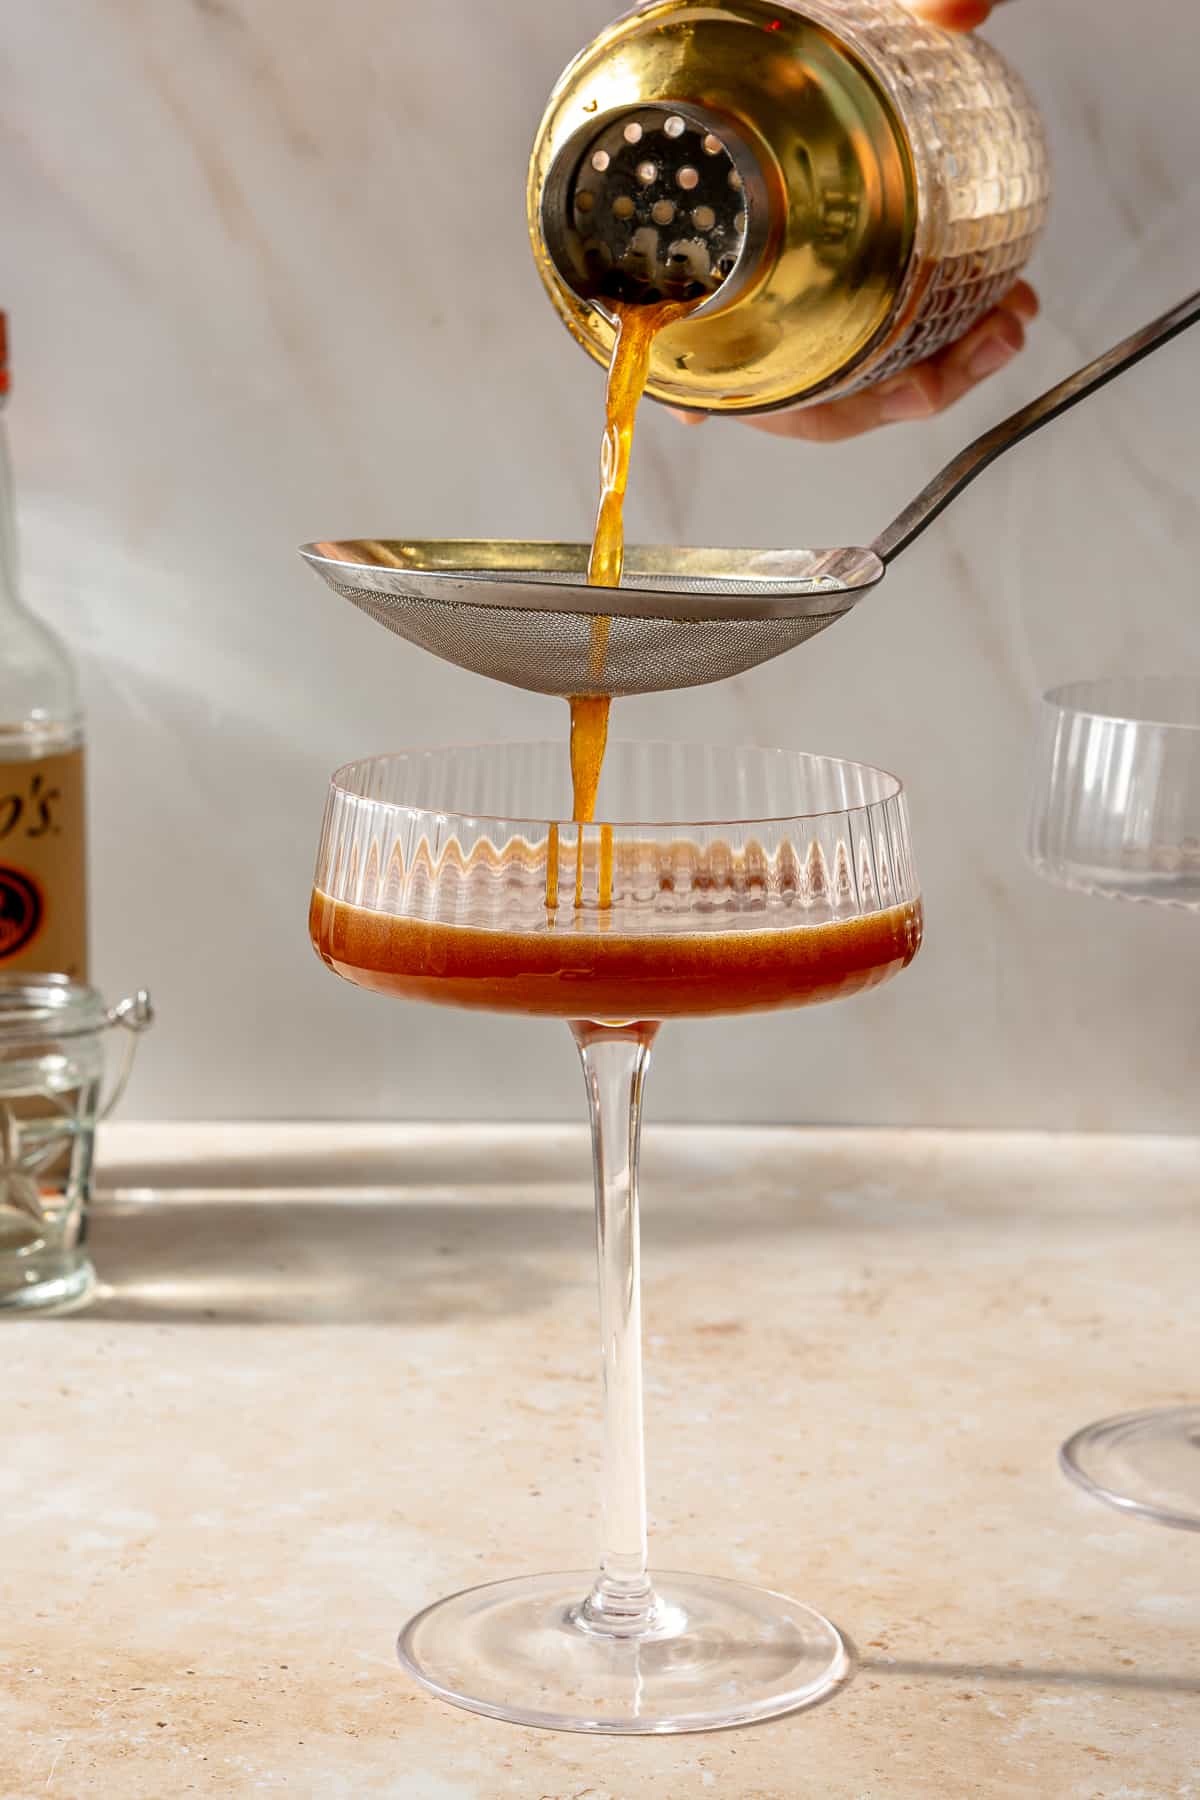 Espresso martini being strained into martini glass.